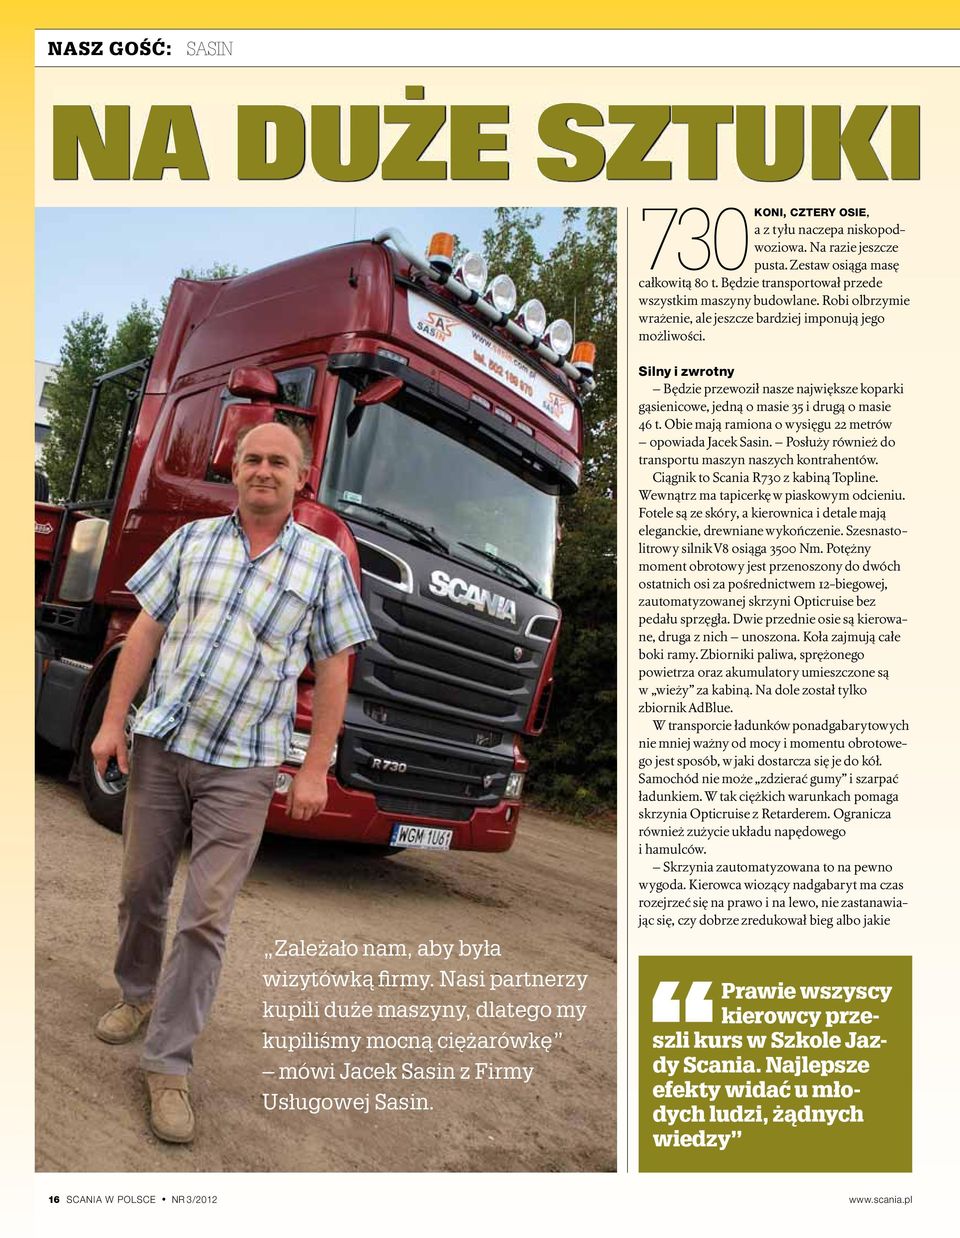 Nasi partnerzy kupili duże maszyny, dlatego my kupiliśmy mocną ciężarówkę mówi Jacek Sasin z Firmy Usługowej Sasin.